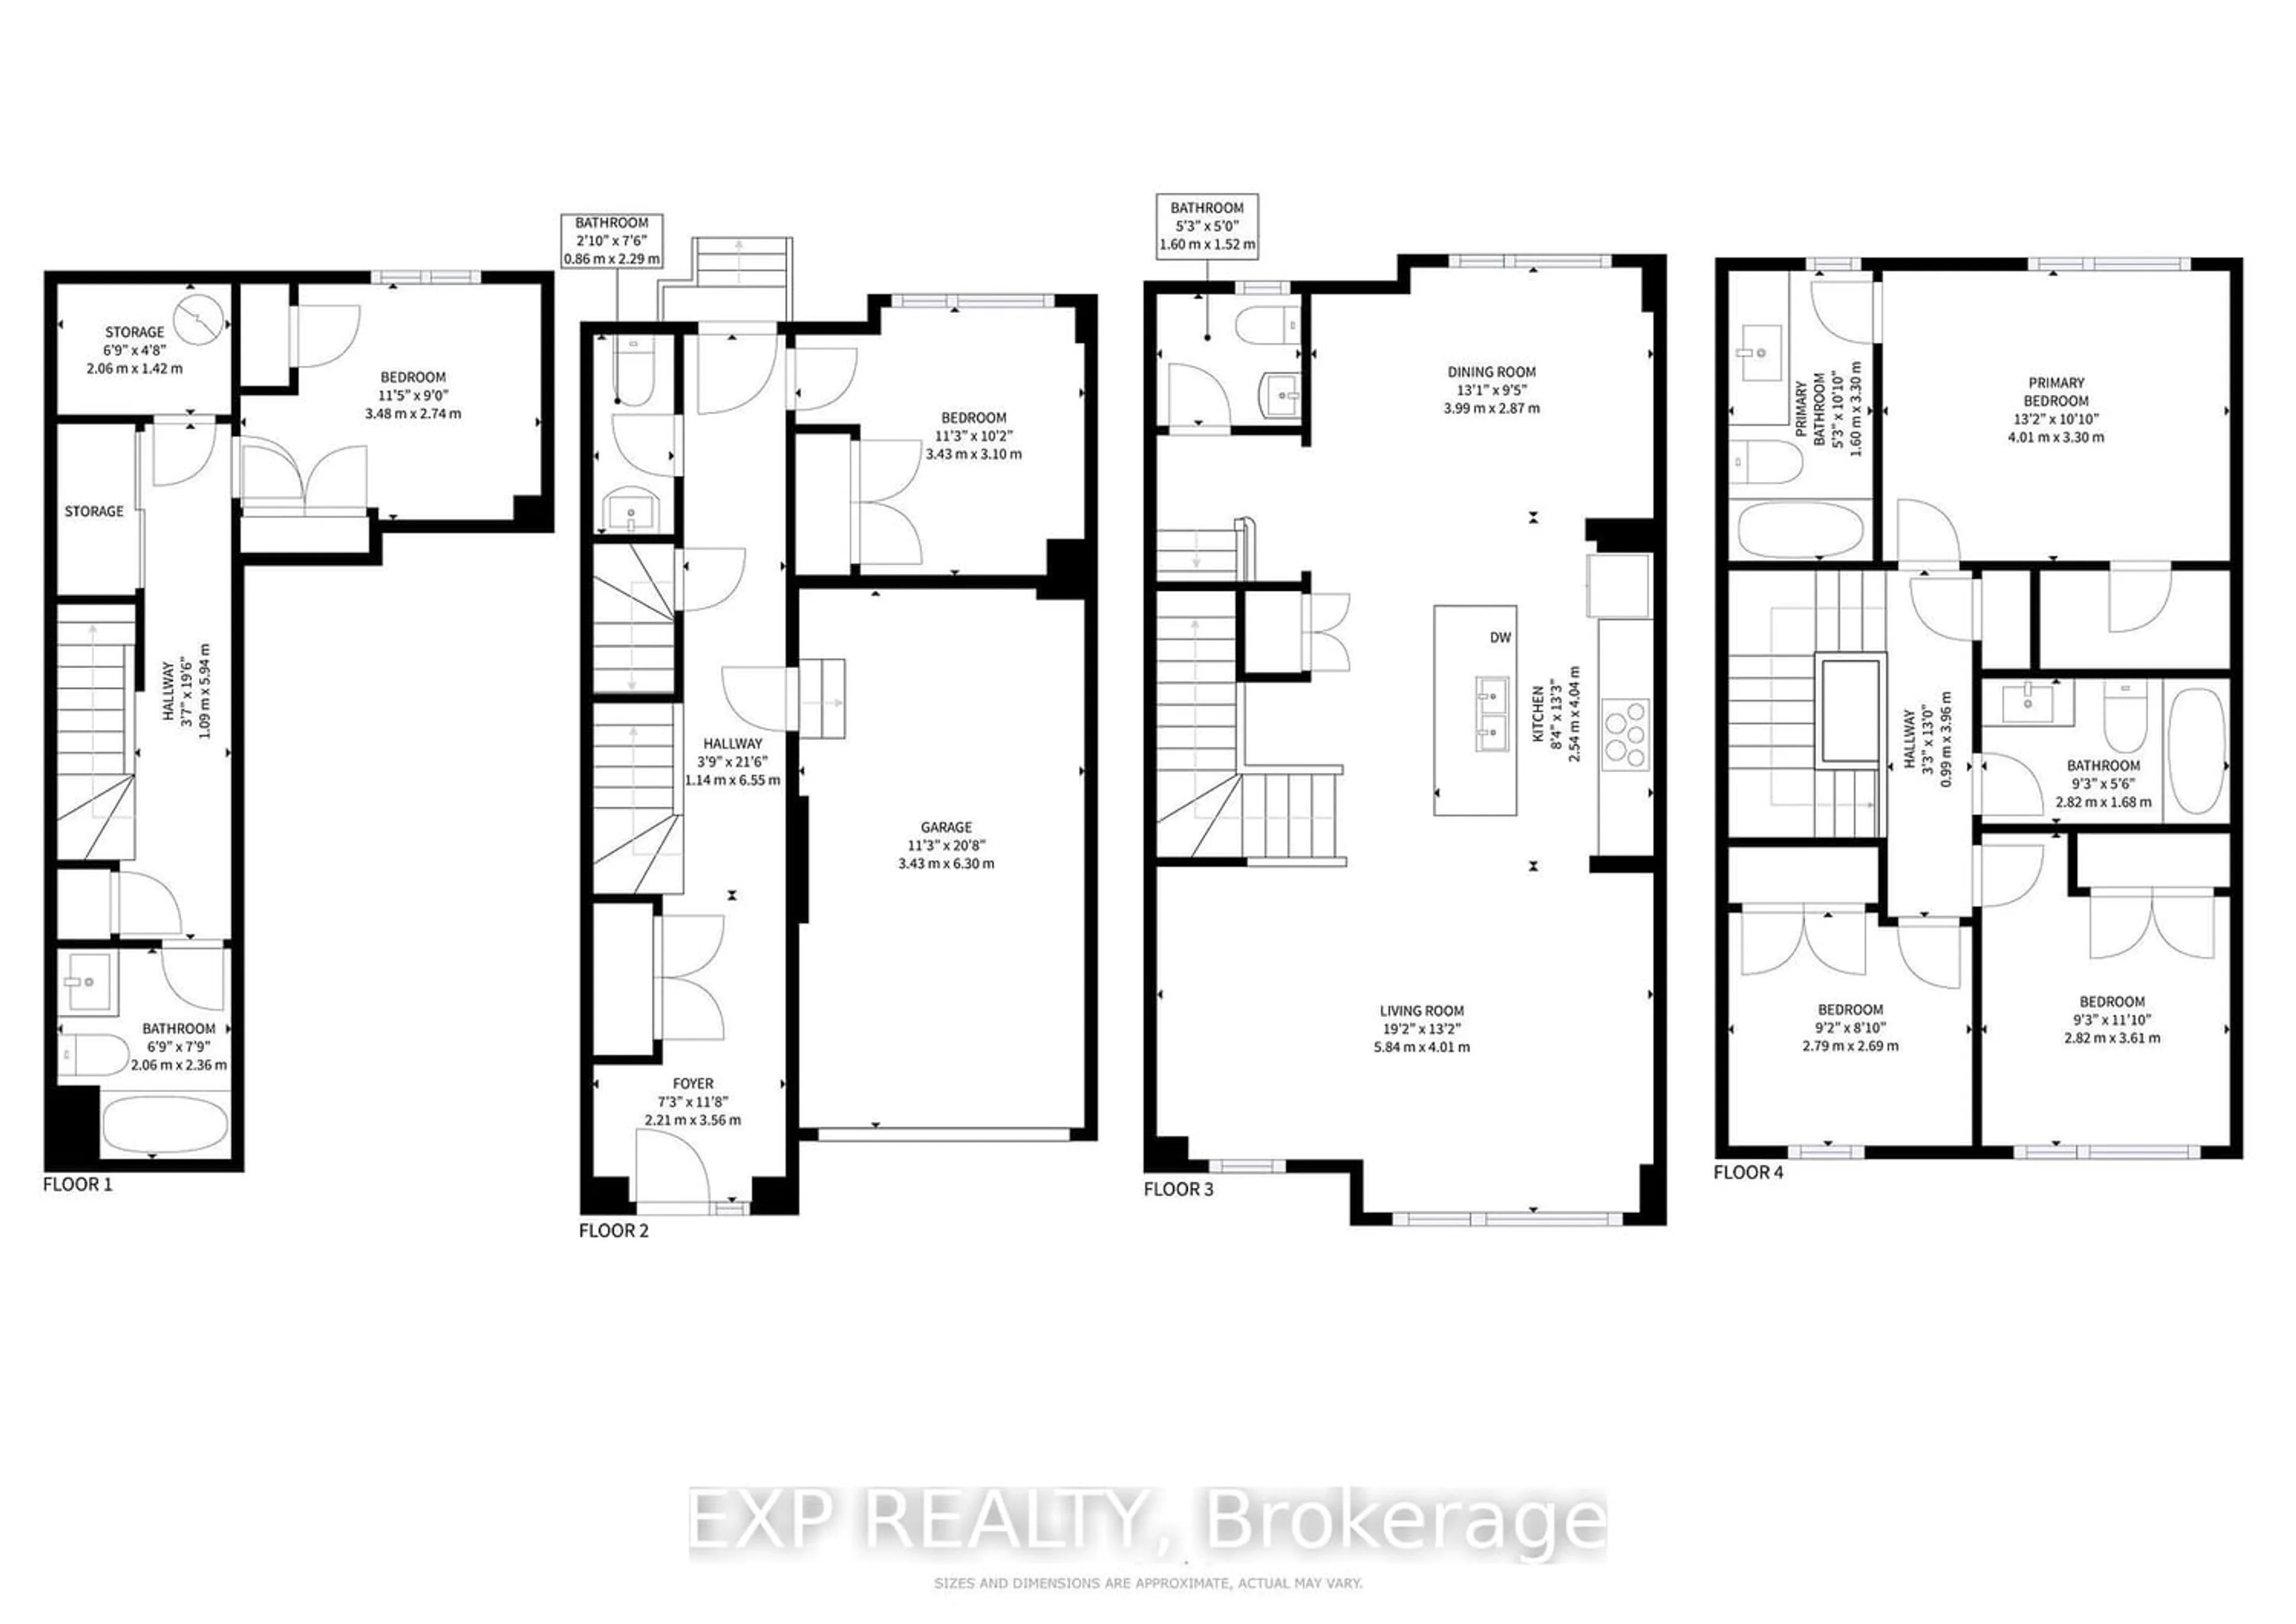 Floor plan for 37 Queenpost Dr, Brampton Ontario L6Y 6L2